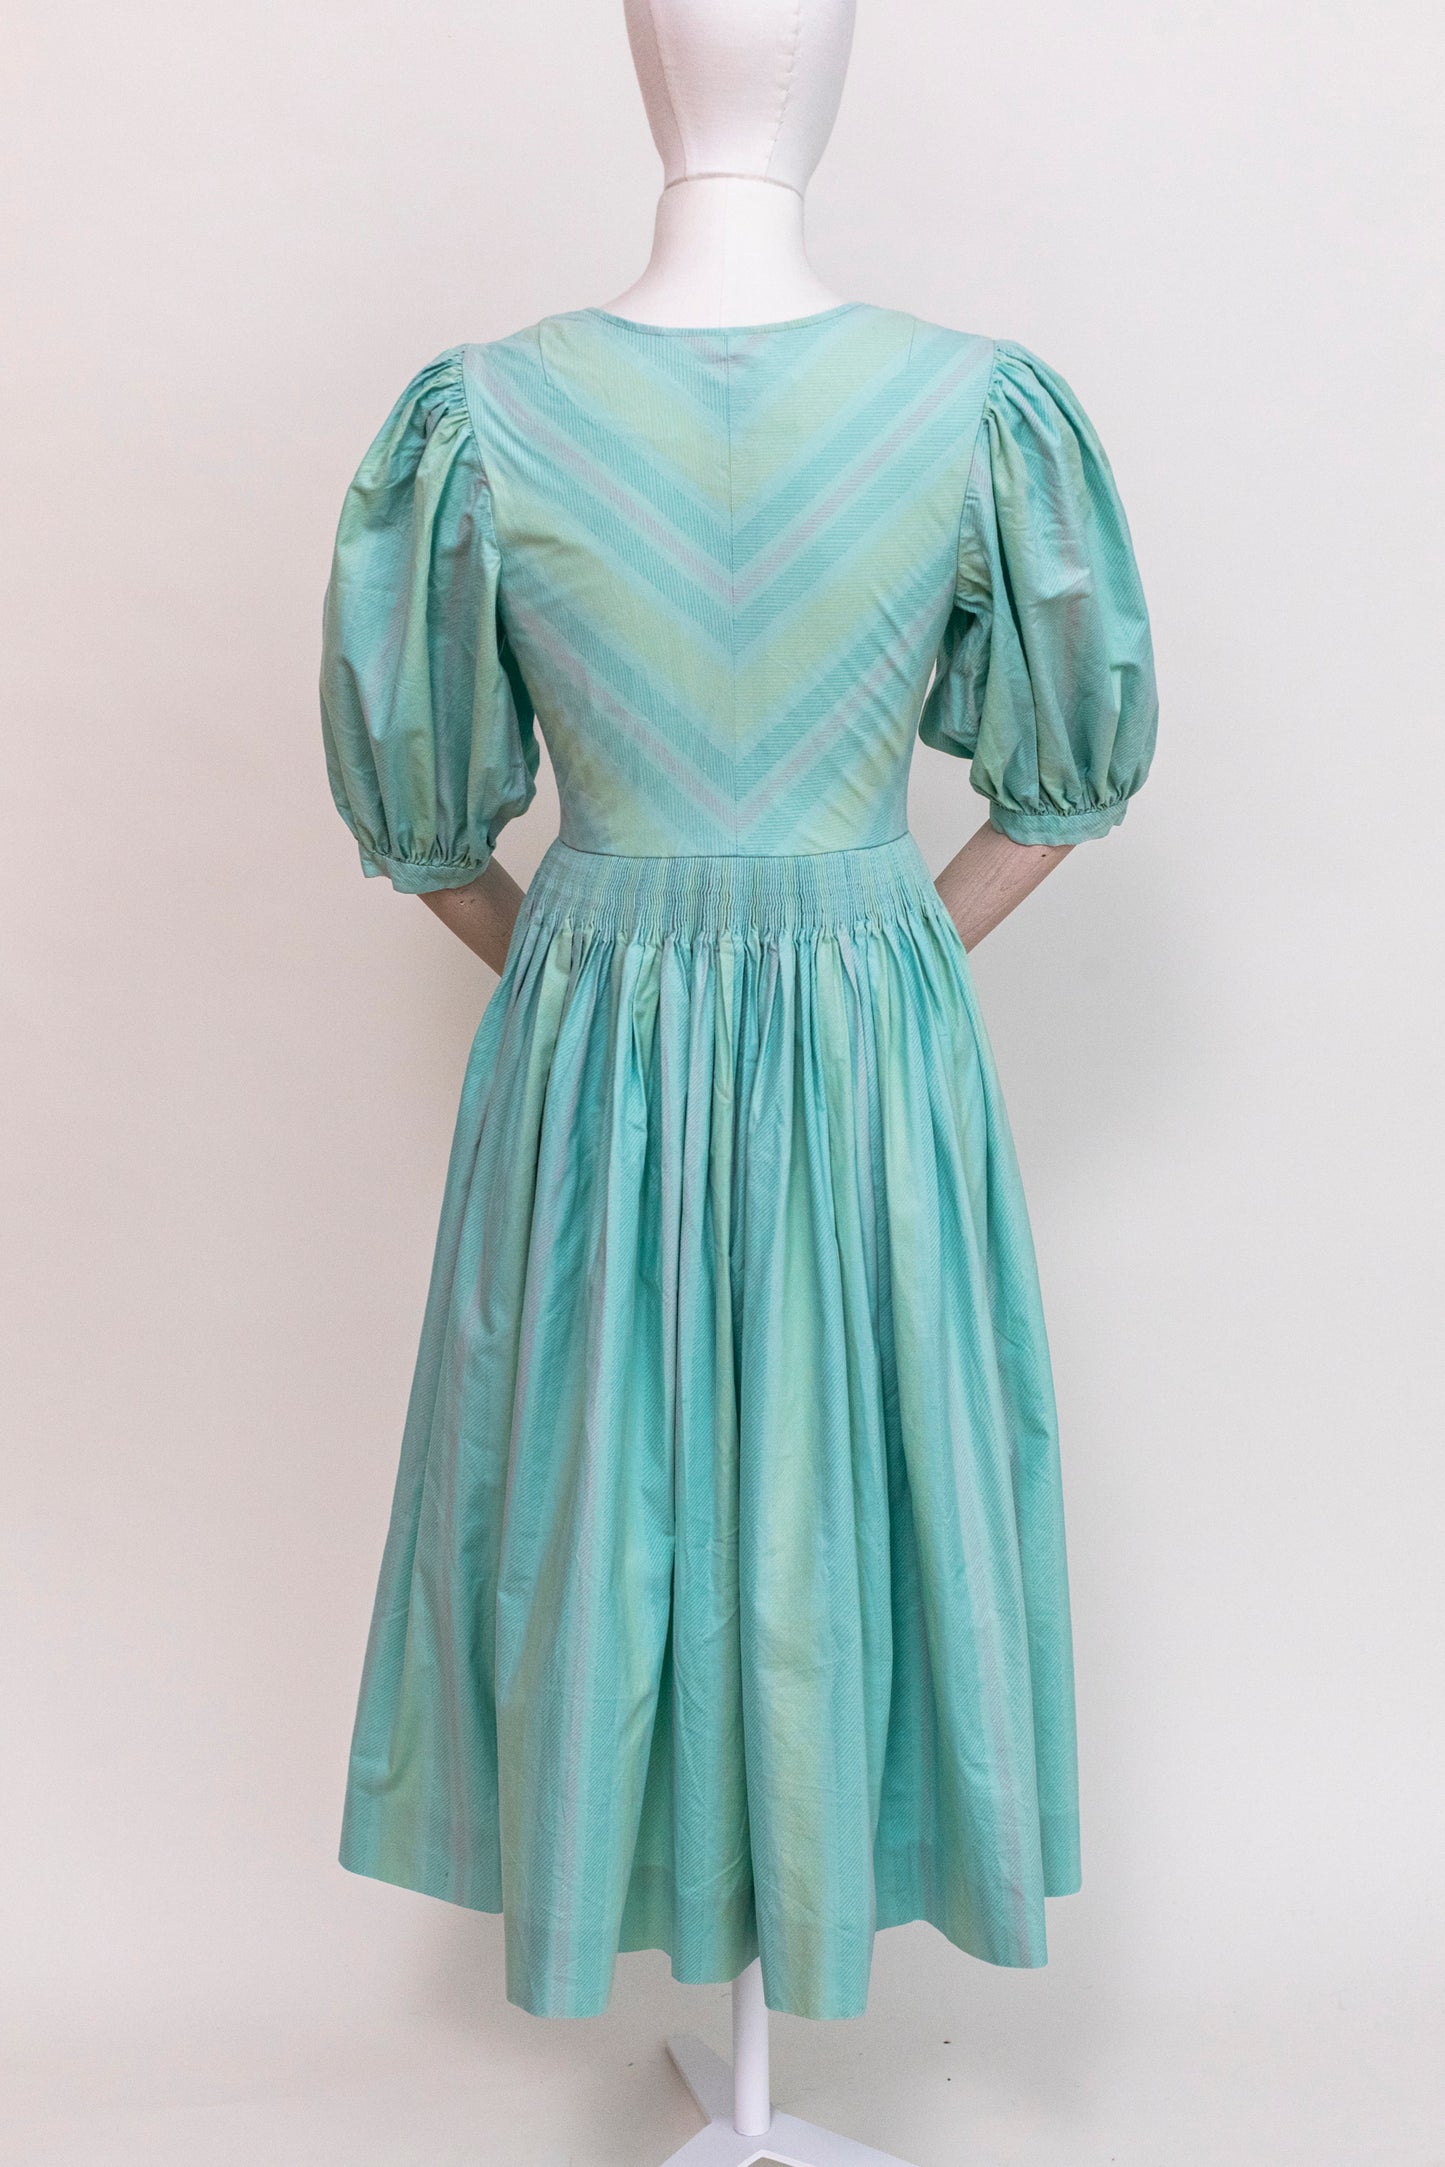 1970's Vintage Austrian Apron Blue Cotton Dress - Size XXS/XS